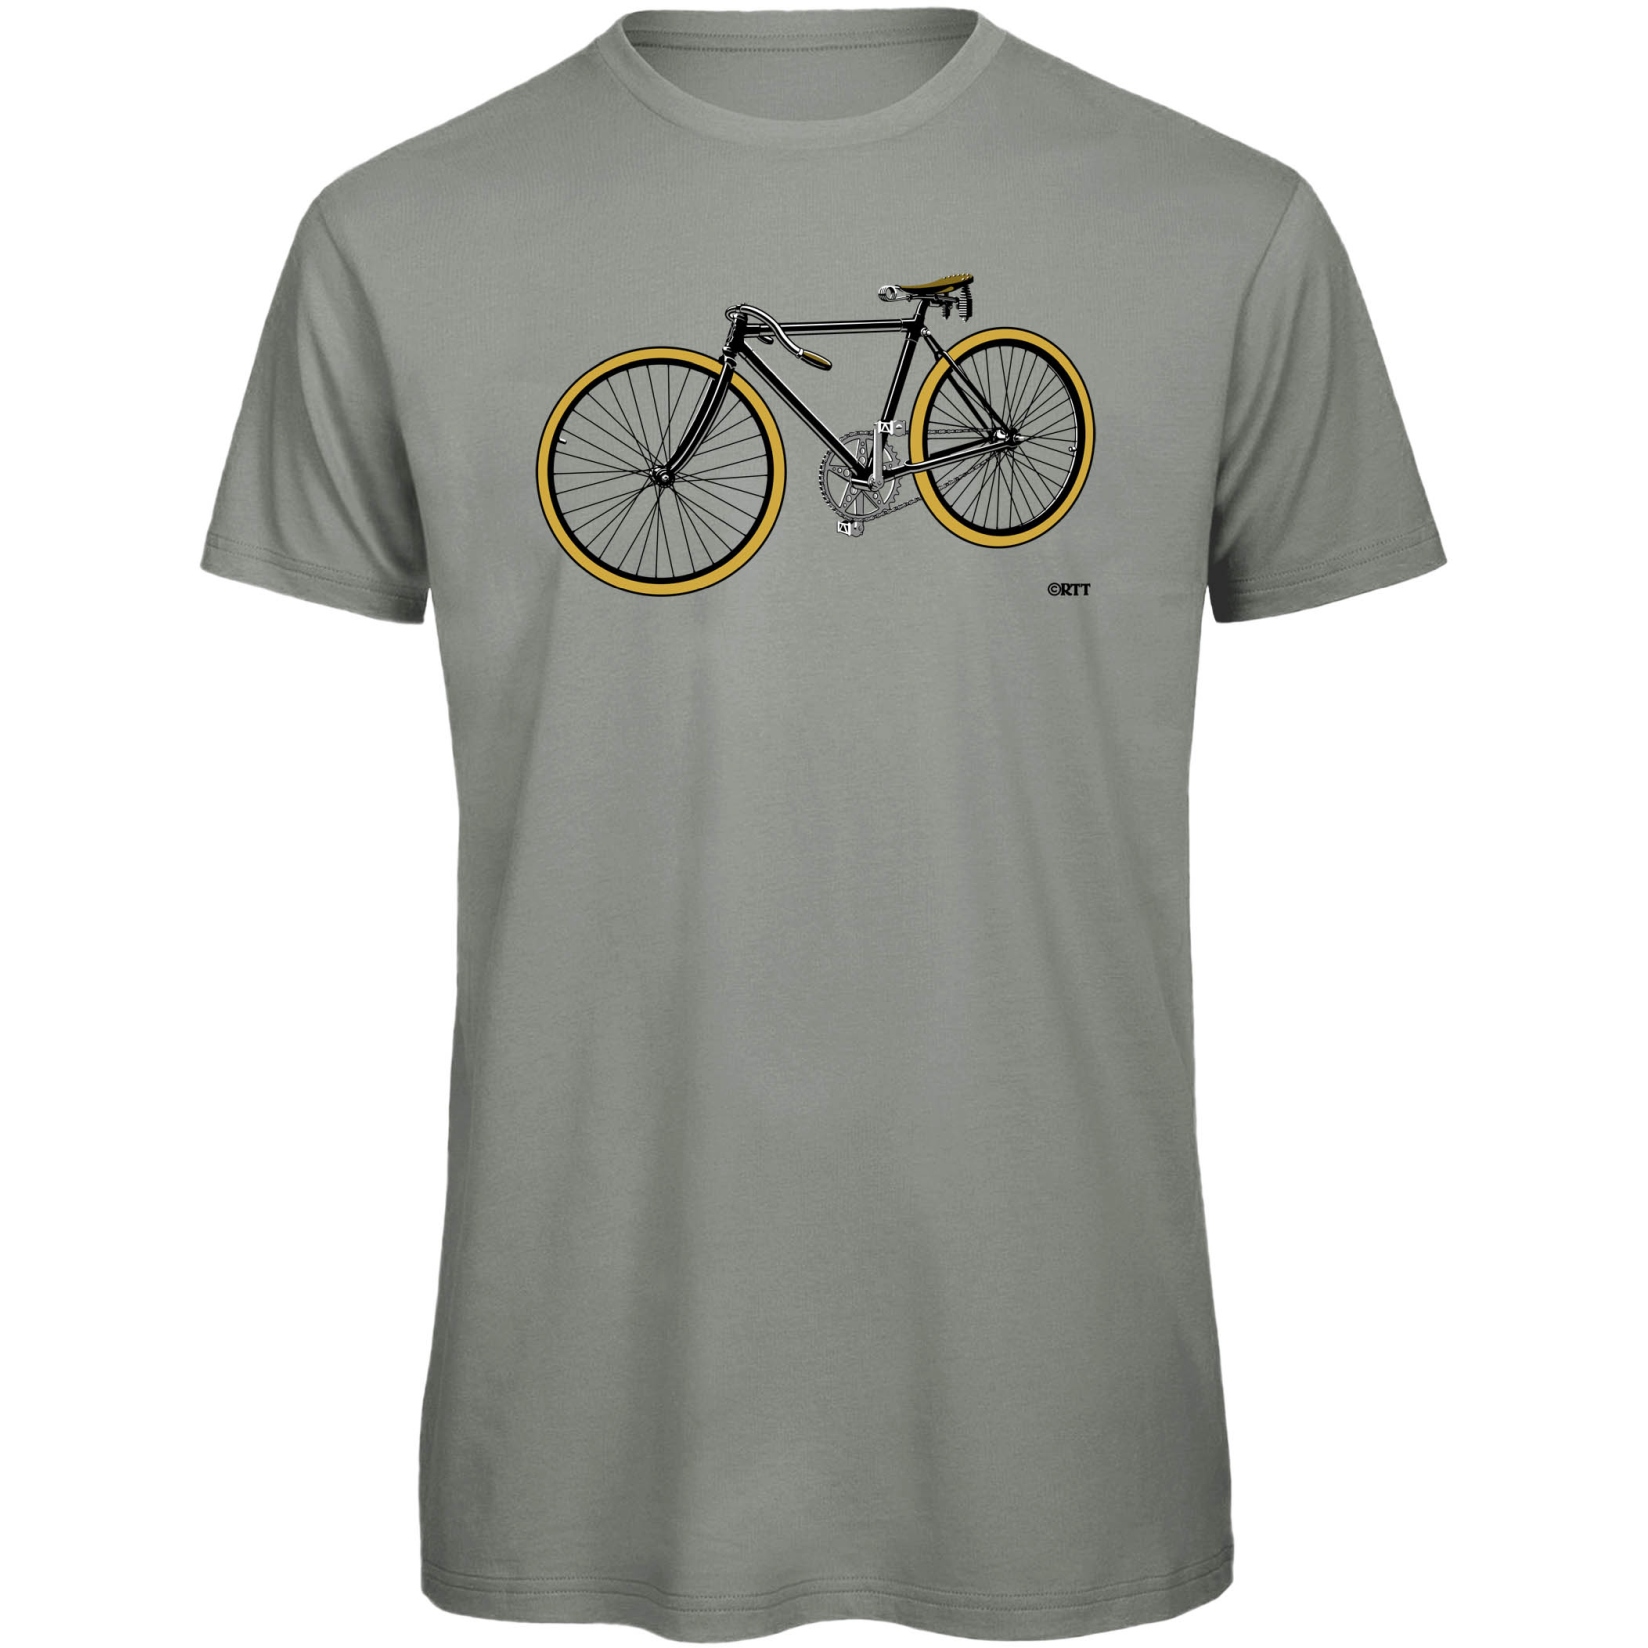 Produktbild von RTTshirts Fahrrad T-Shirt Retro Rennrad - hellgrau